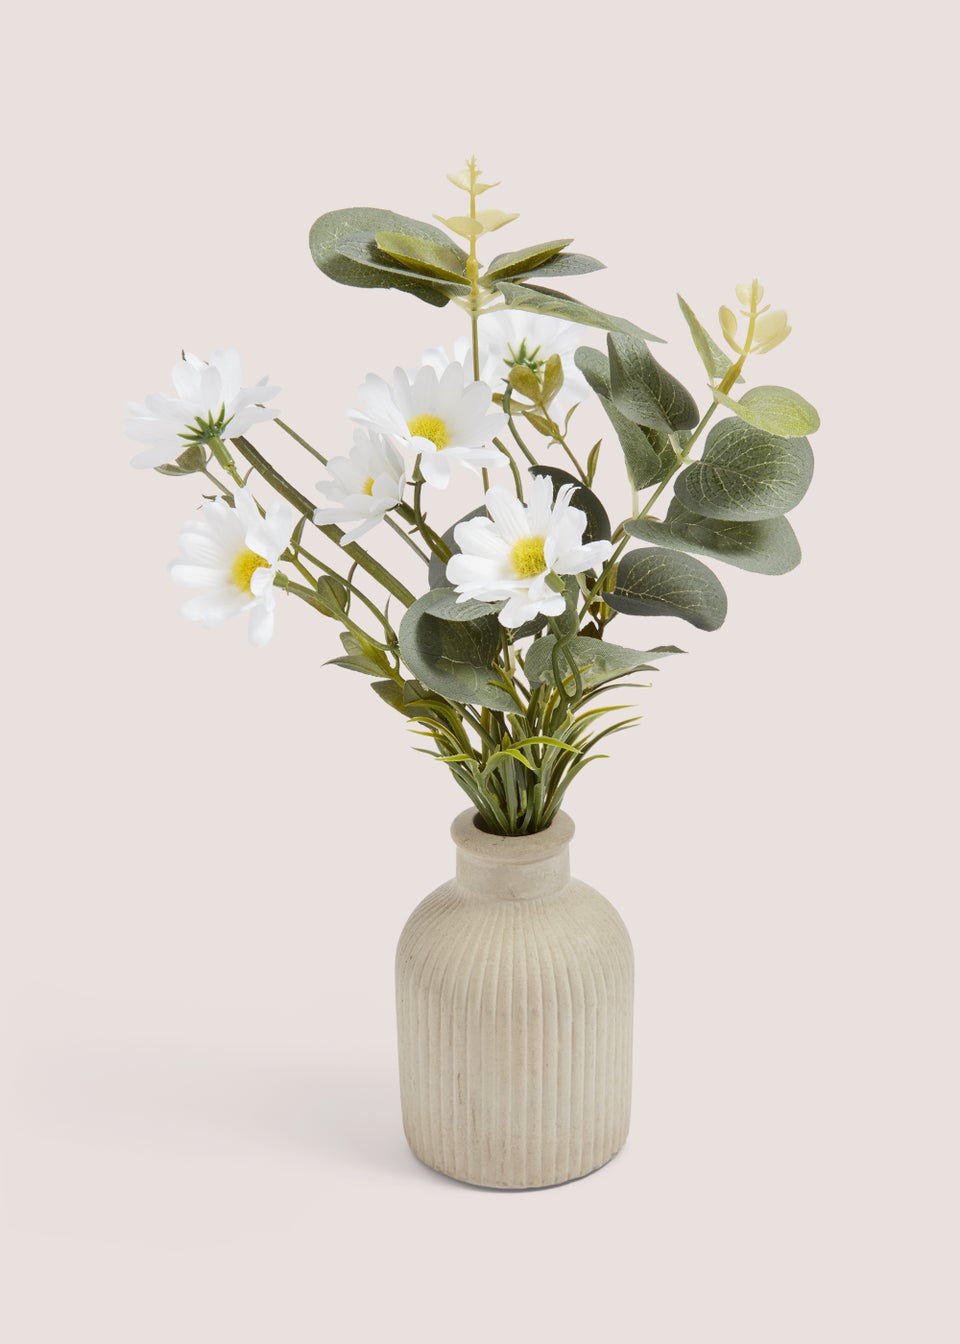 Grey Vase With Daisies (24cm x 8cm x 8cm)